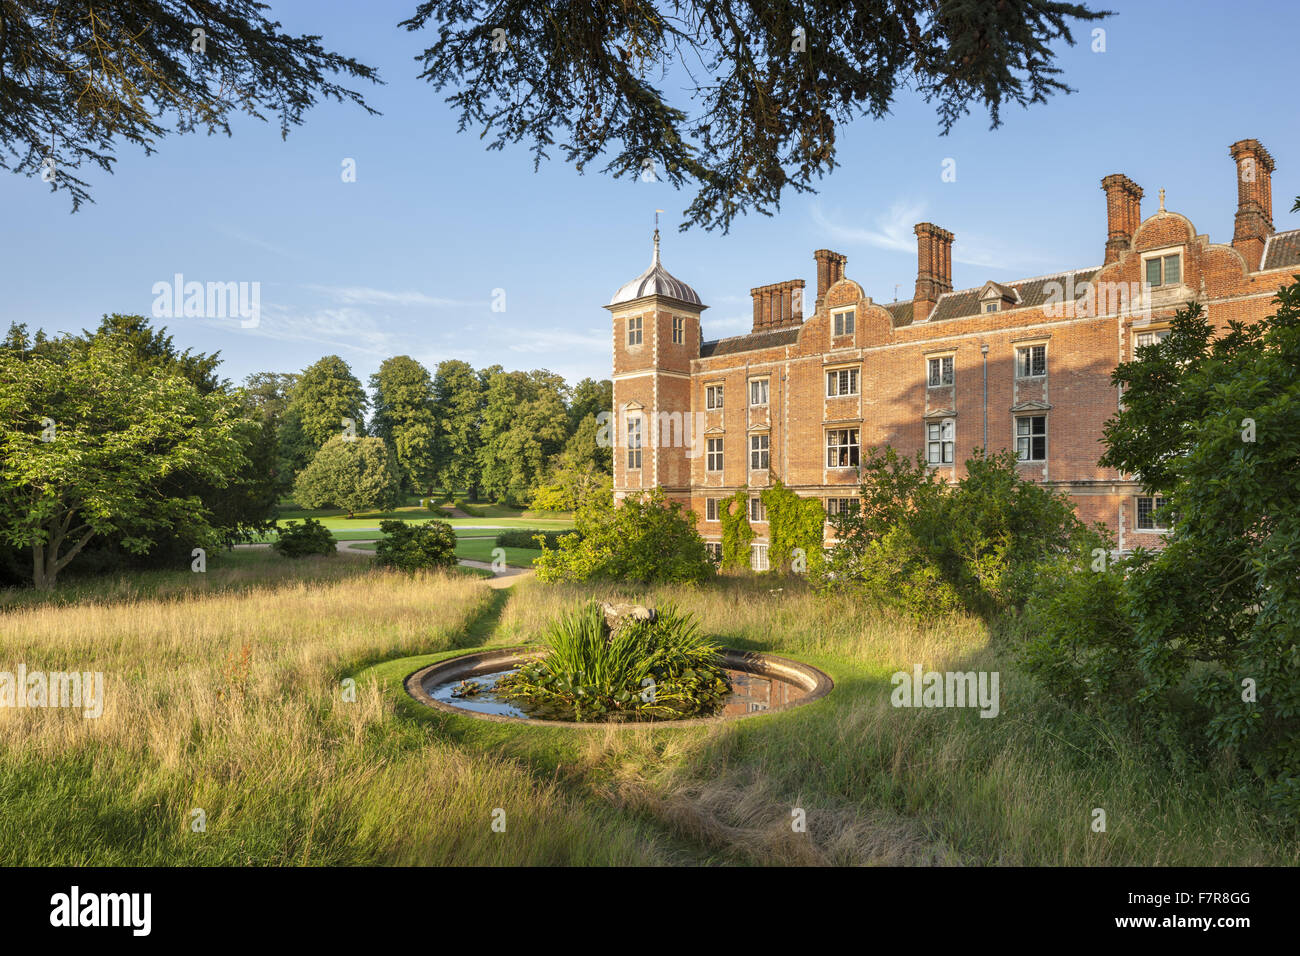 Die West-Garten am Blickling Estate, Norfolk. Blickling ist ein Turm aus rotem Backstein jakobinischen Herrenhaus, sitzen in wunderschönen Gärten und Parks. Stockfoto